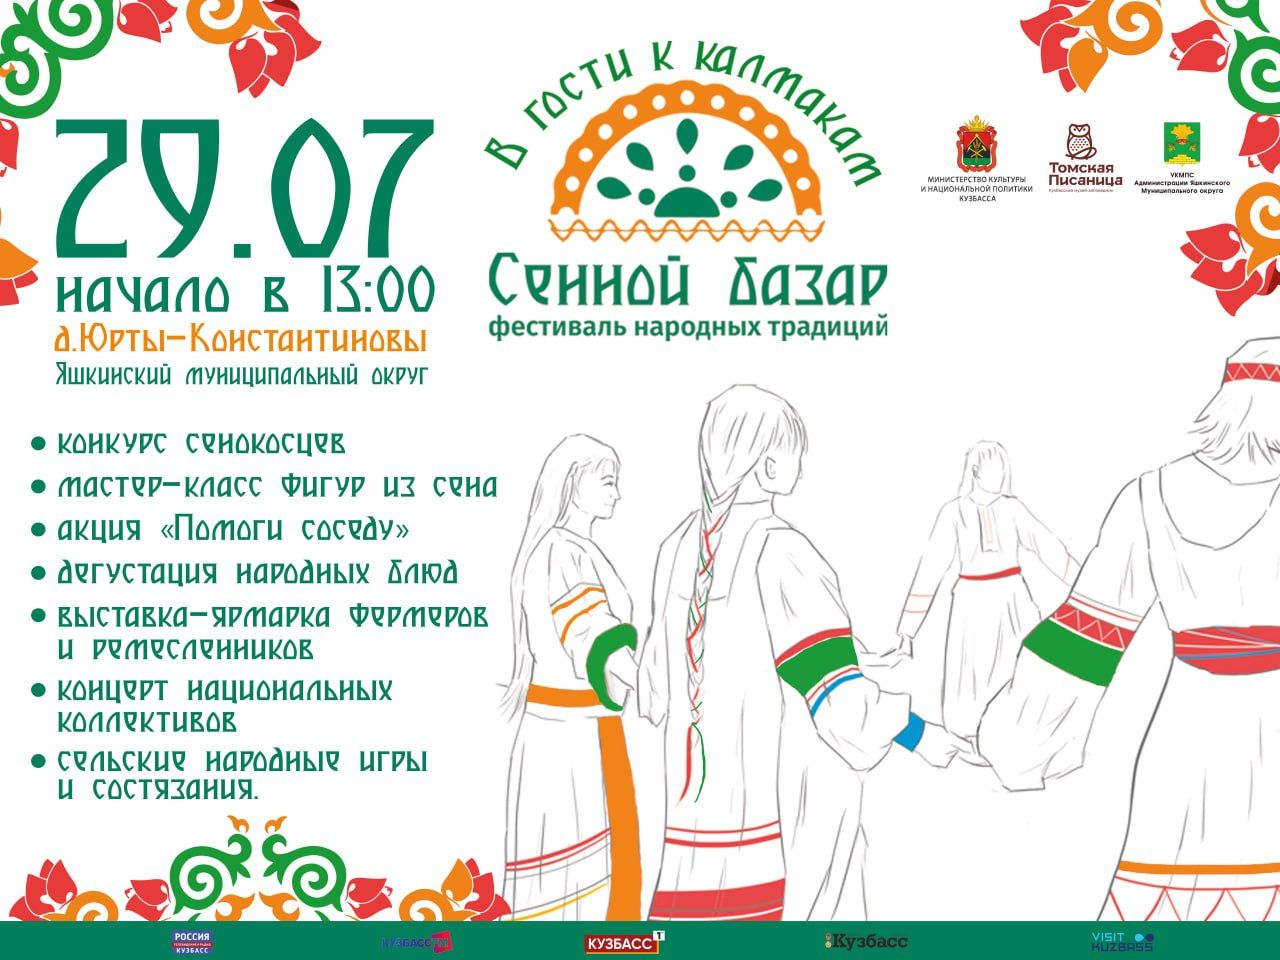 Кузбассовцев приглашают провести выходные в гостях у калмаков в деревне Юрты-Константиновы